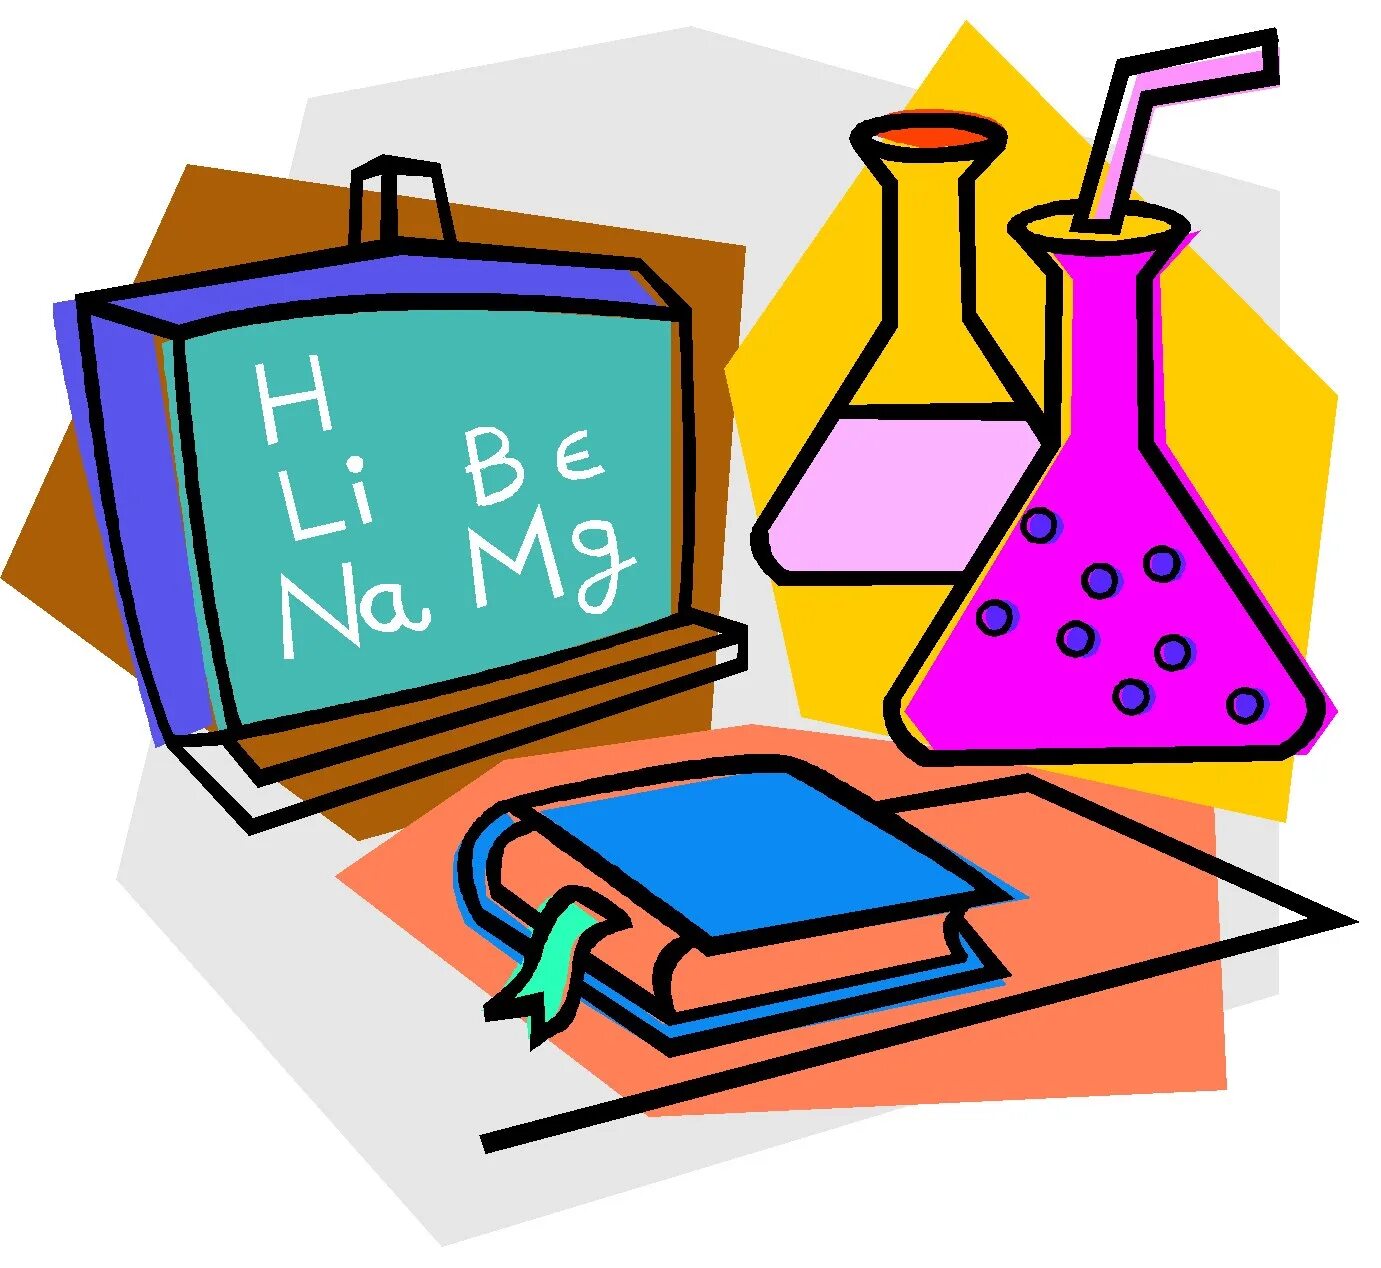 Урок химии. Школьные предметы химия. Химия предмет. Химия рисунки.